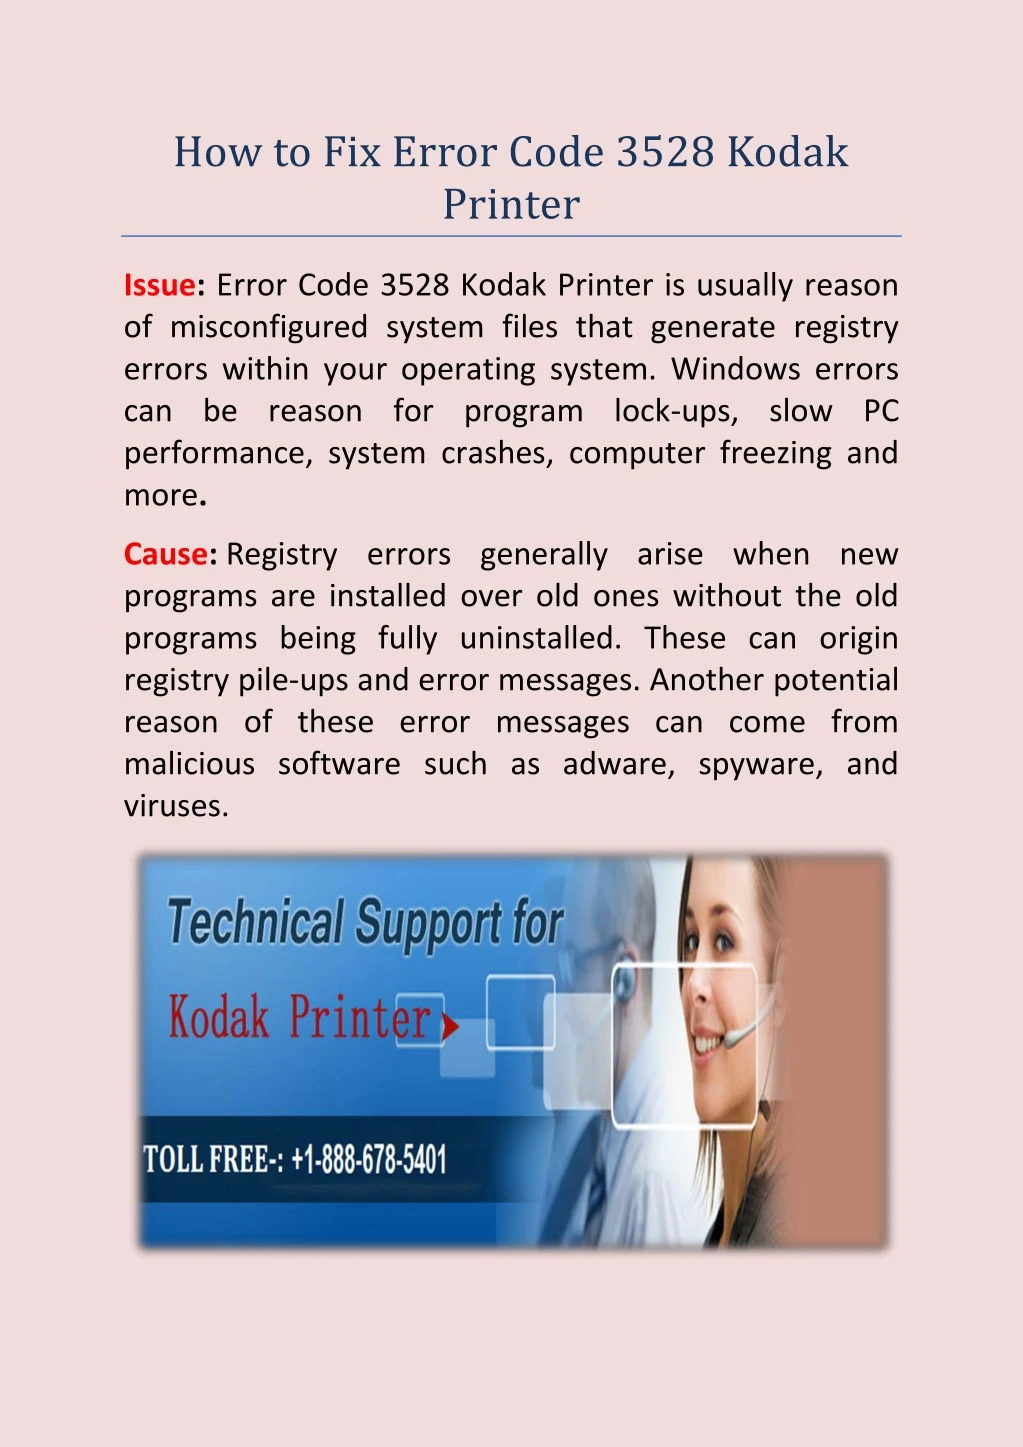 how to fix error code 3528 kodak printer